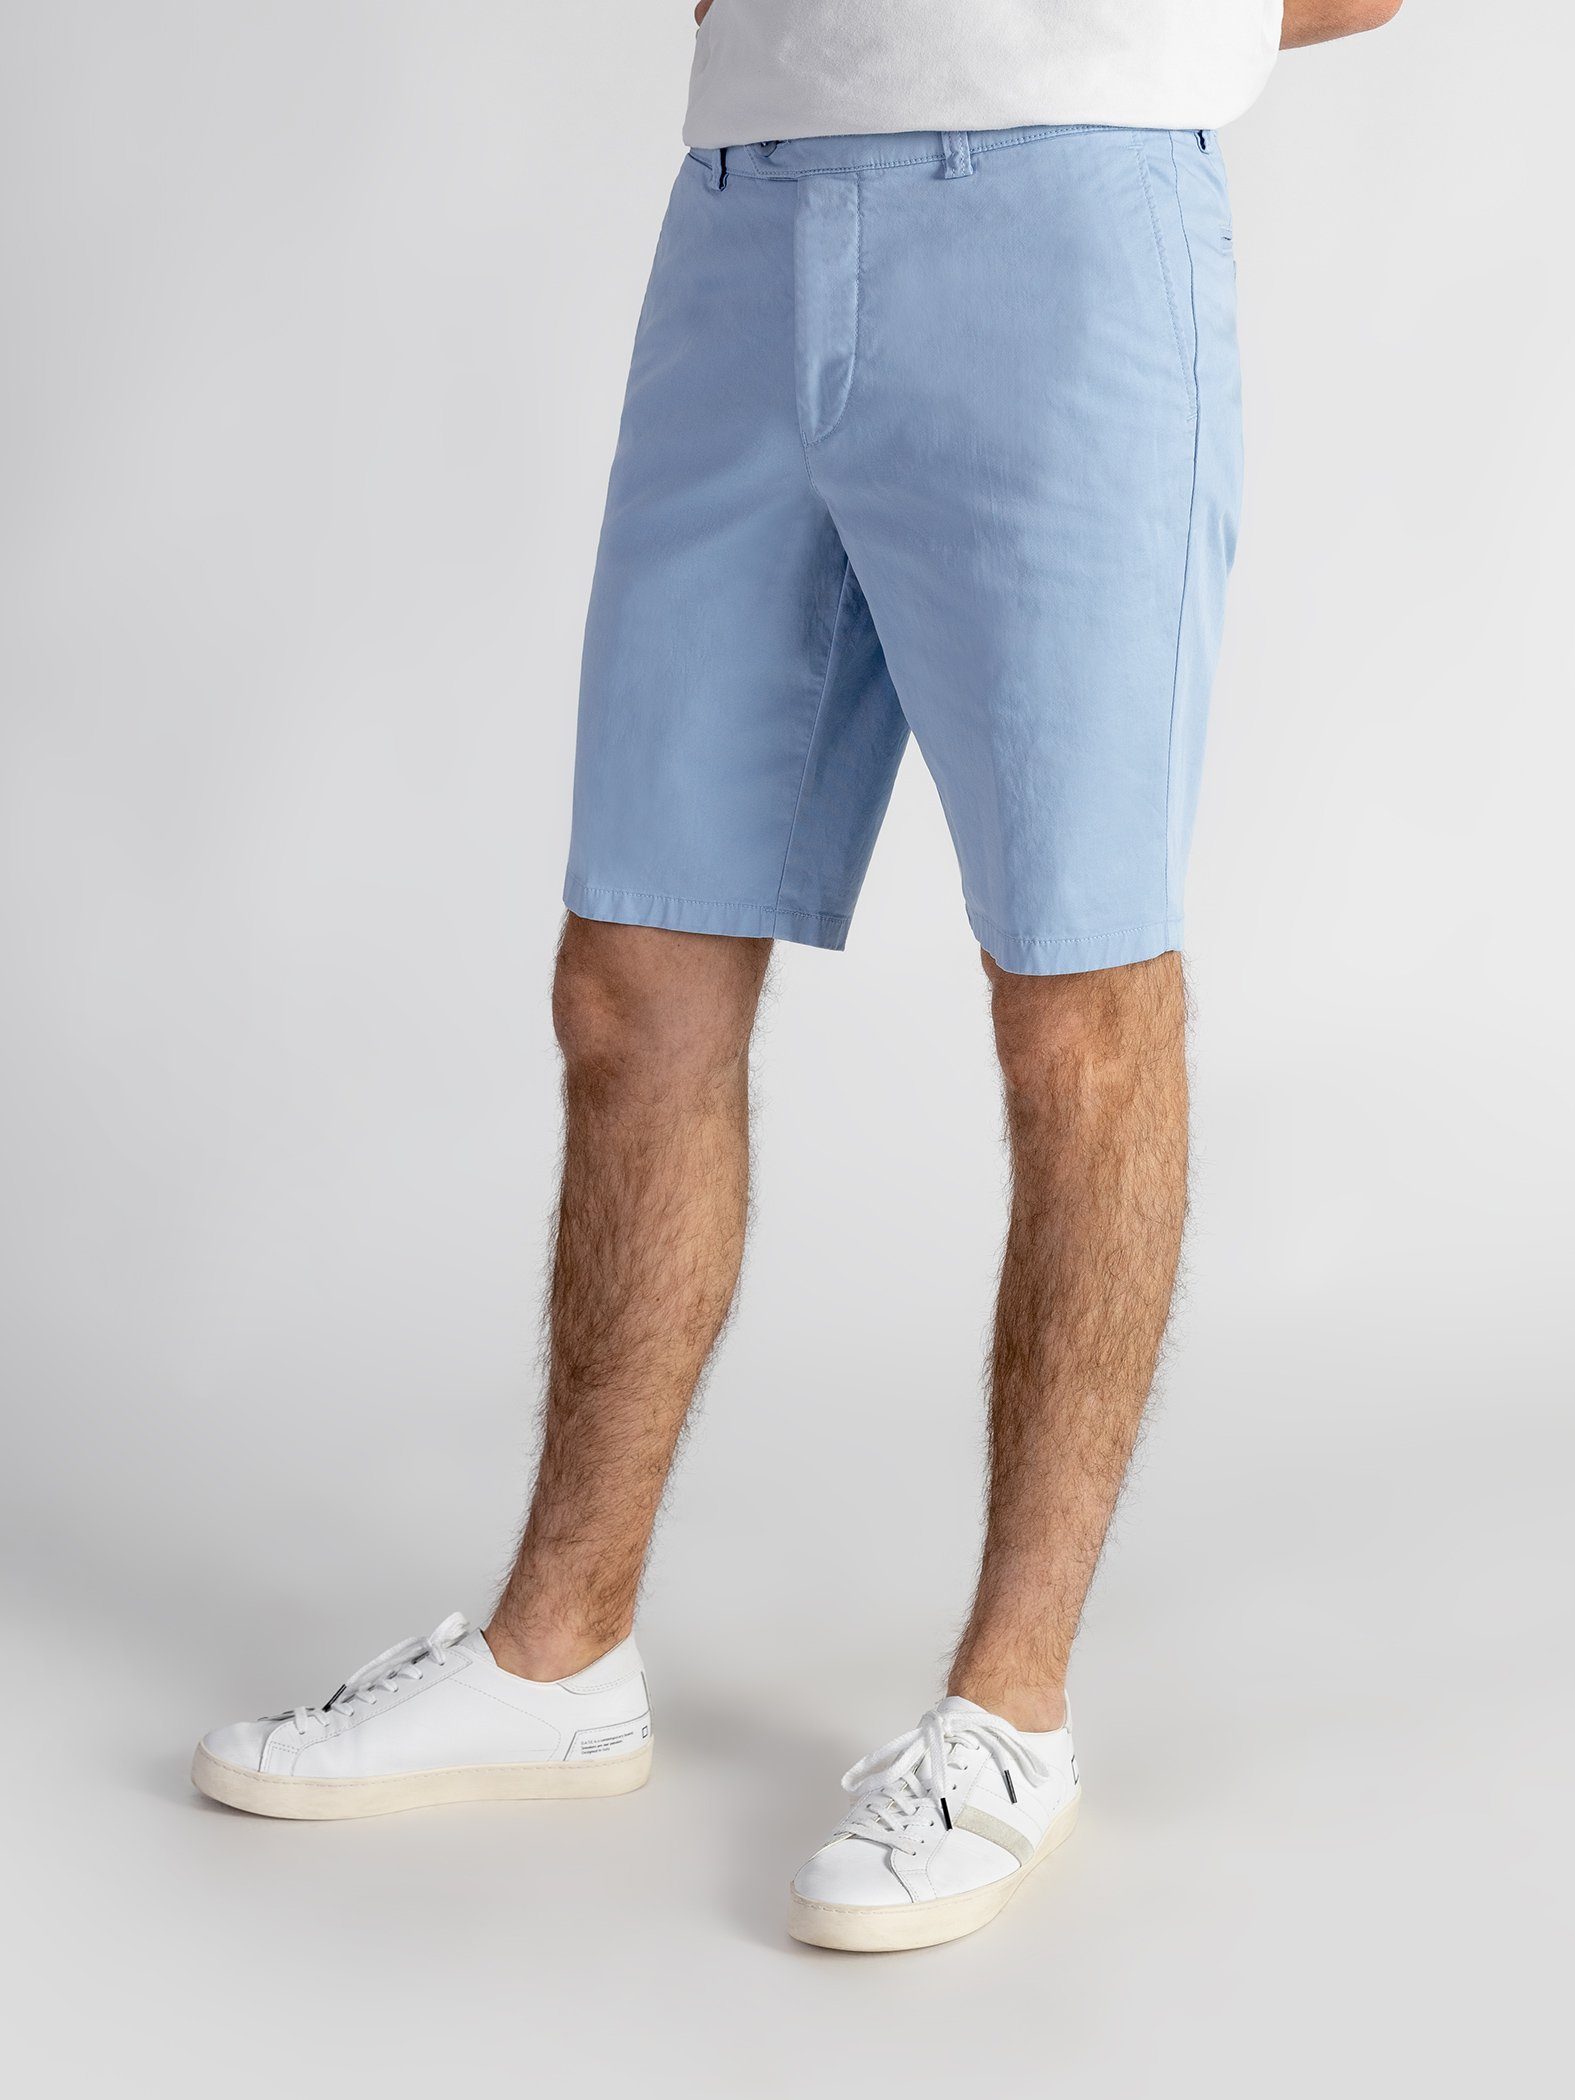 TwoMates Shorts Shorts mit elastischem Bund, Farbauswahl, GOTS-zertifiziert hellblau